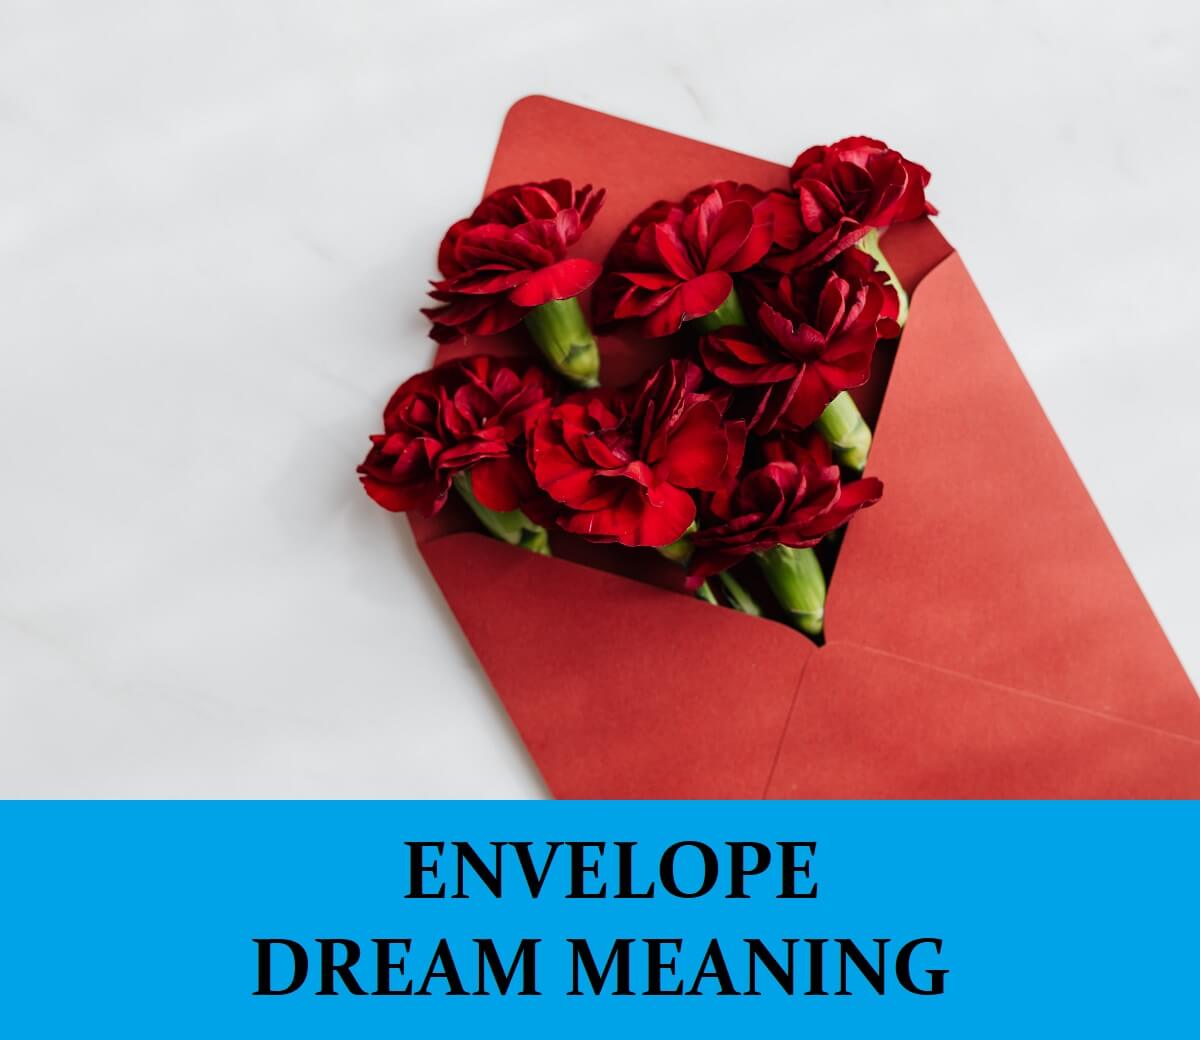 Dream About Envelopes